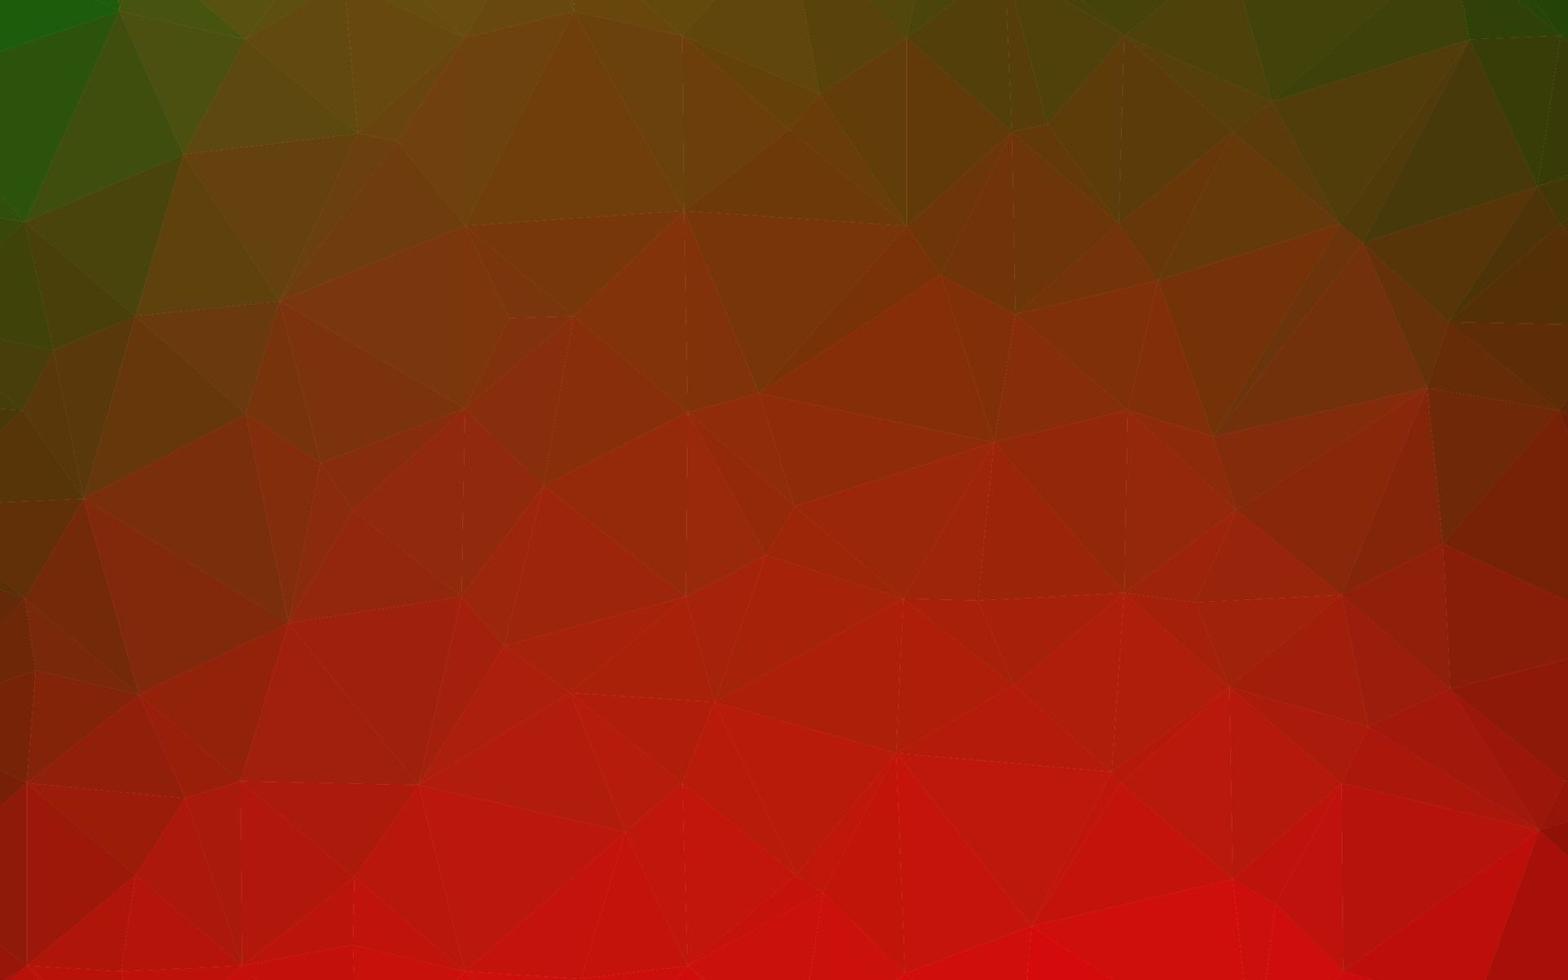 Light Green, Red vector shining triangular pattern.